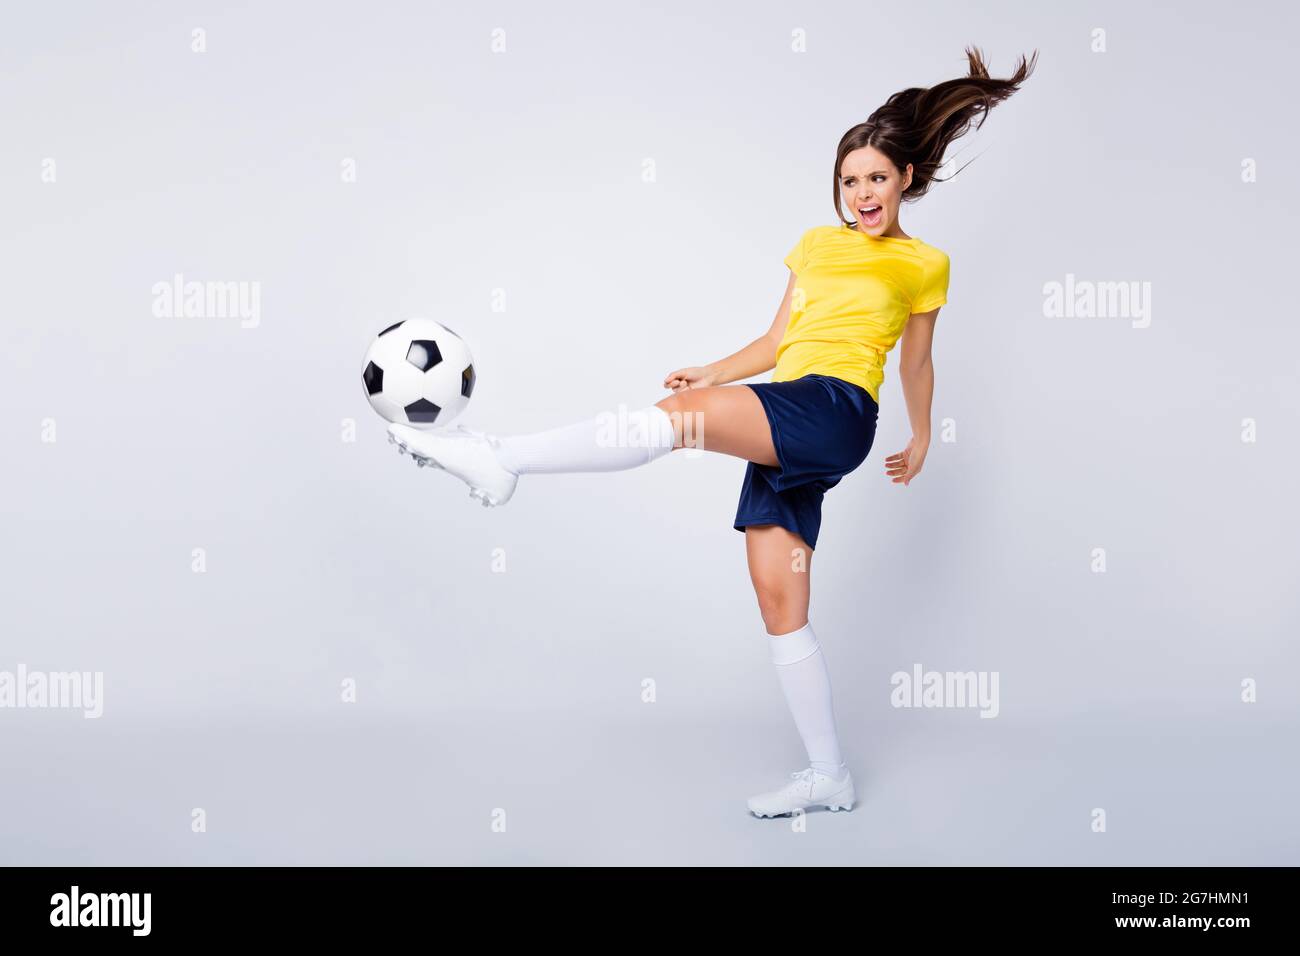 famous soccer player girl